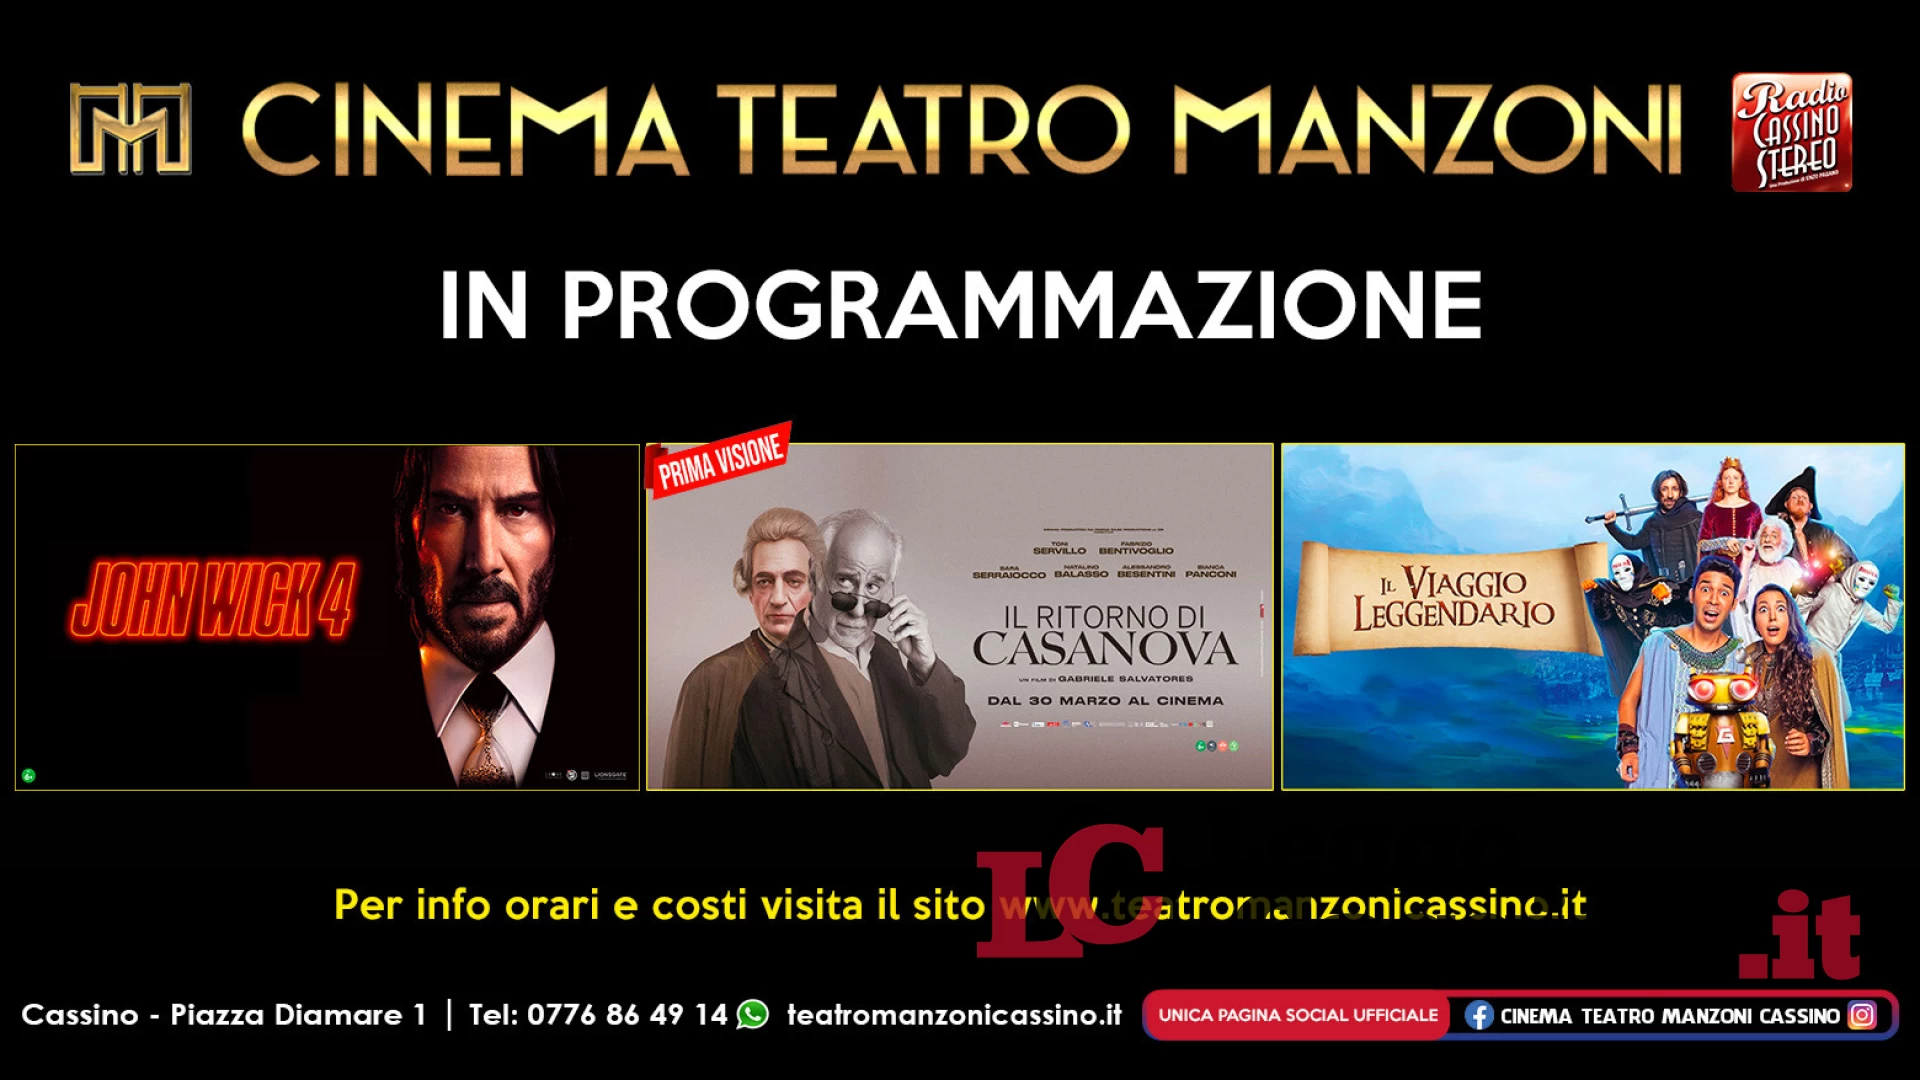 Cinema Teatro Manzoni Cassino: arrivano “Il ritorno di Casanova” e “Il viaggio leggendario”